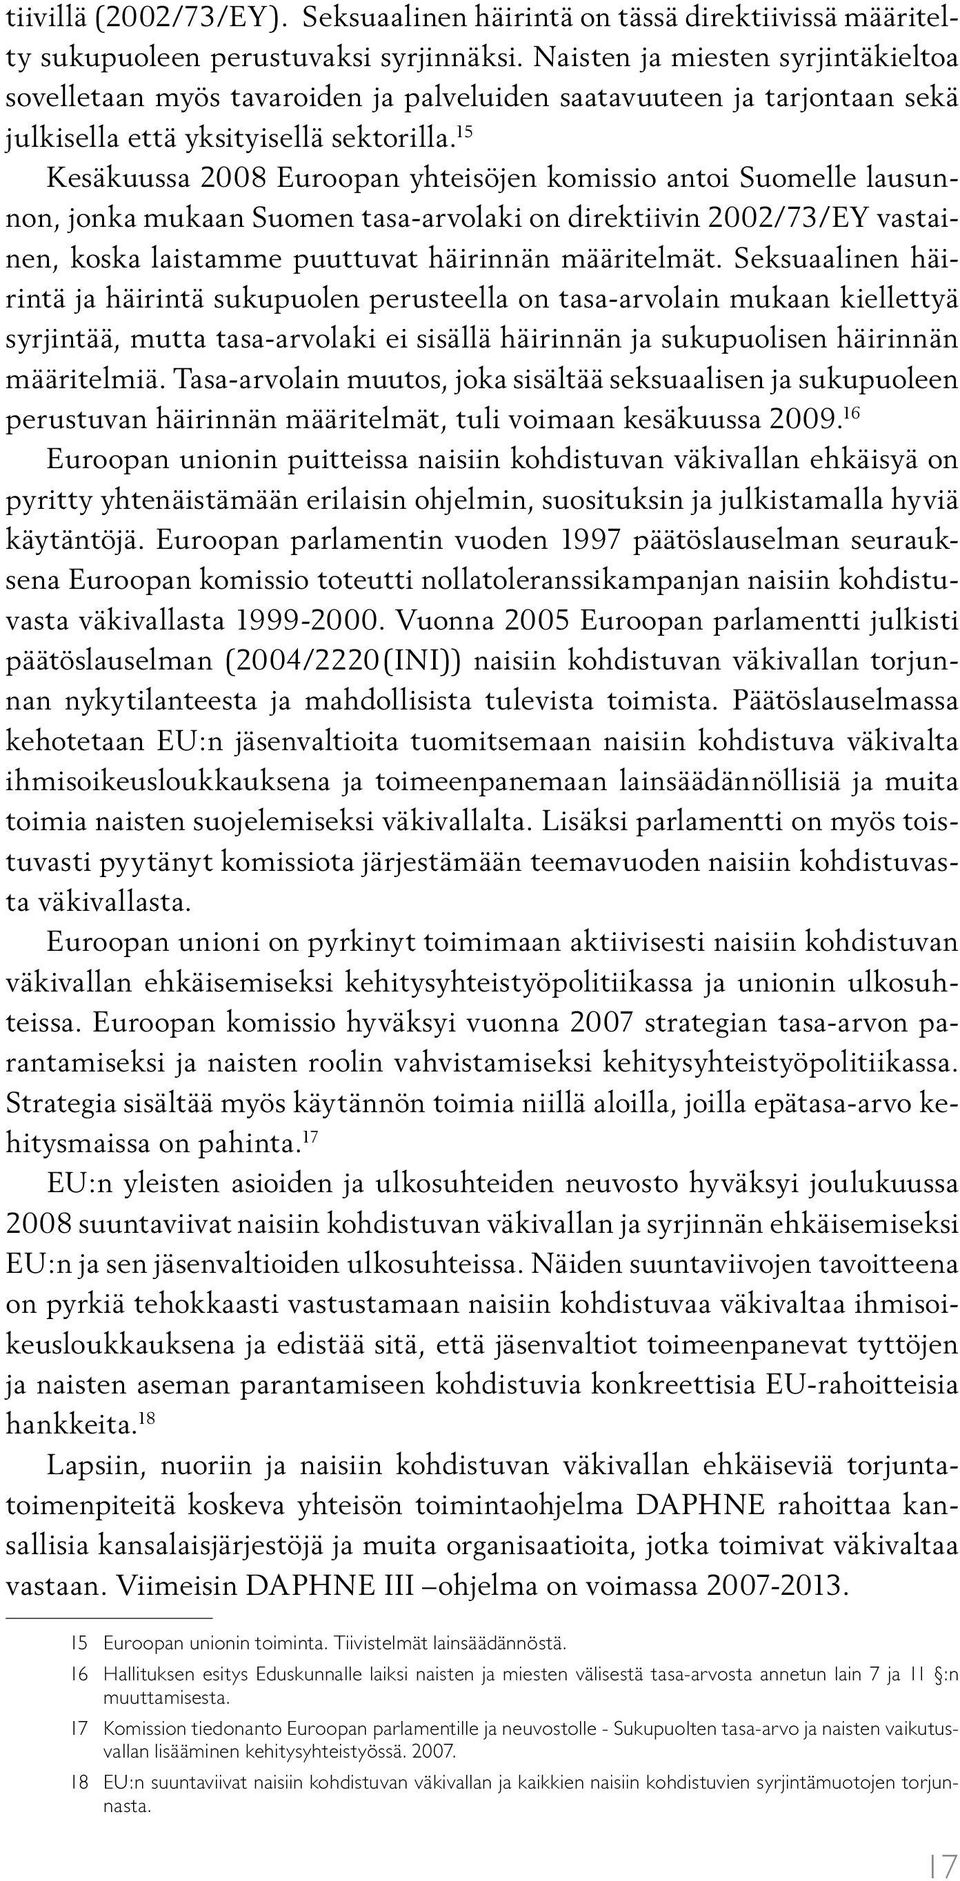 15 Kesäkuussa 2008 Euroopan yhteisöjen komissio antoi Suomelle lausunnon, jonka mukaan Suomen tasa-arvolaki on direktiivin 2002/73/EY vastainen, koska laistamme puuttuvat häirinnän määritelmät.